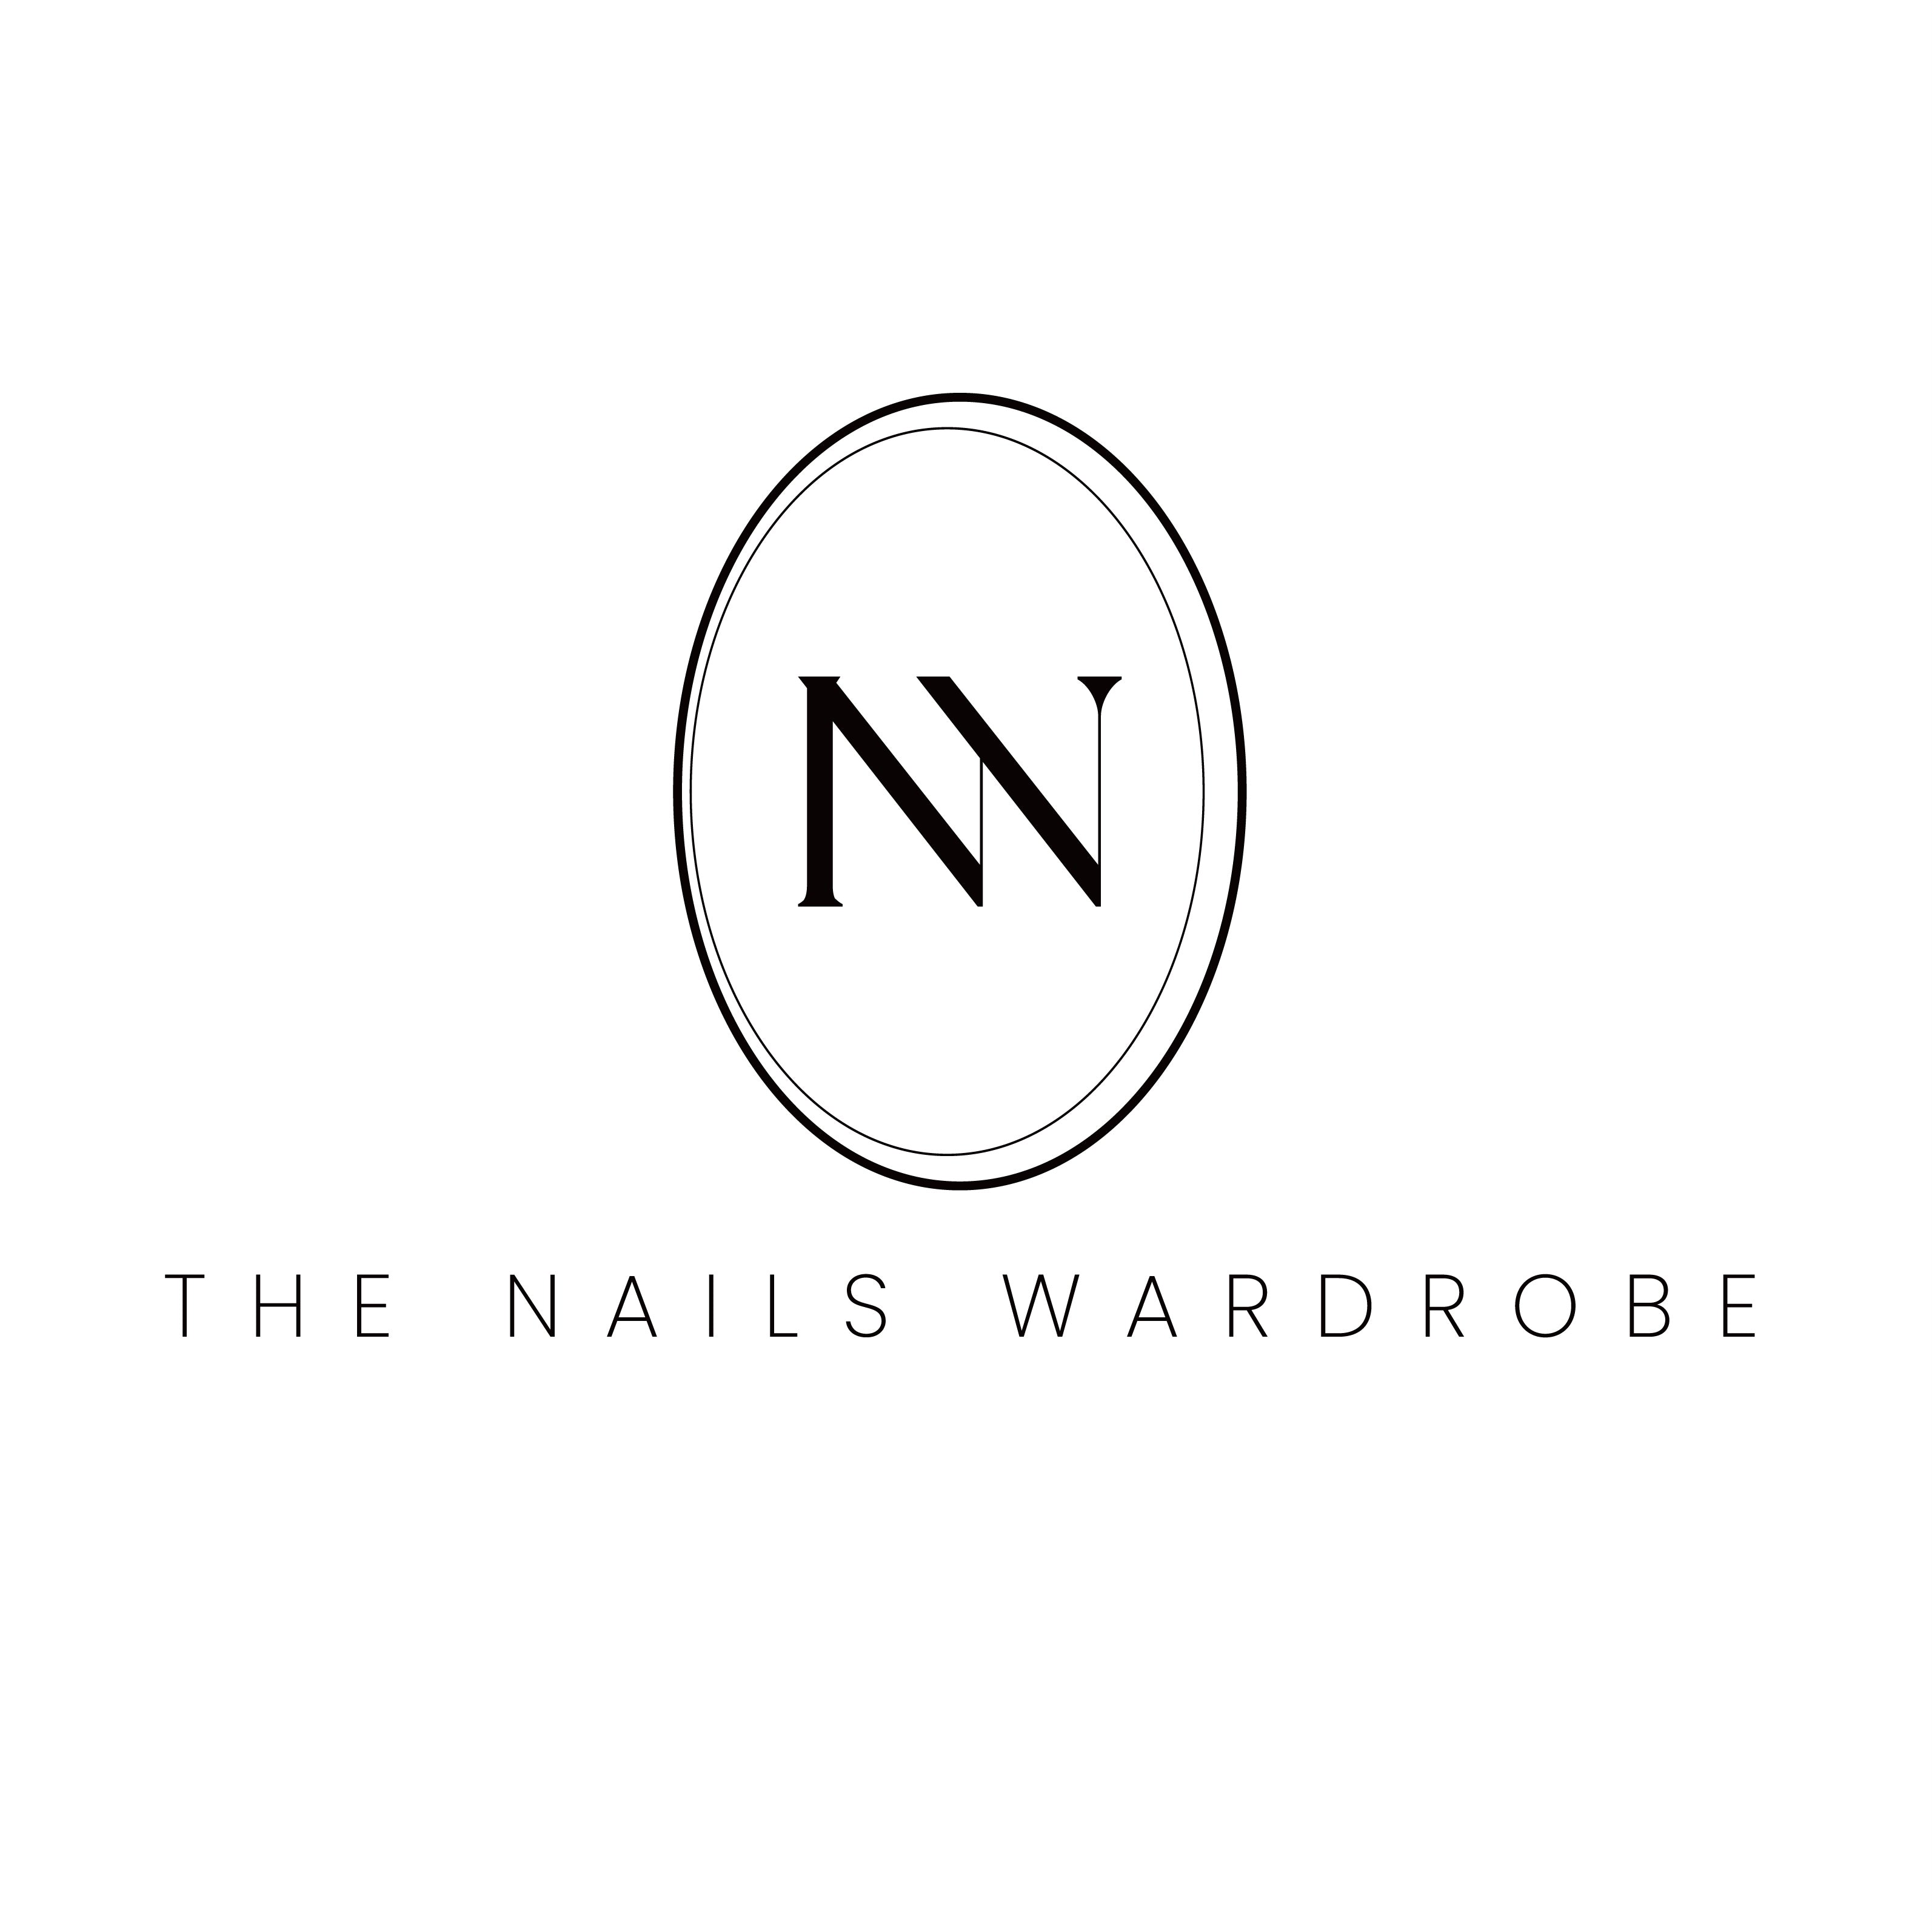 The Nails Wardrobe